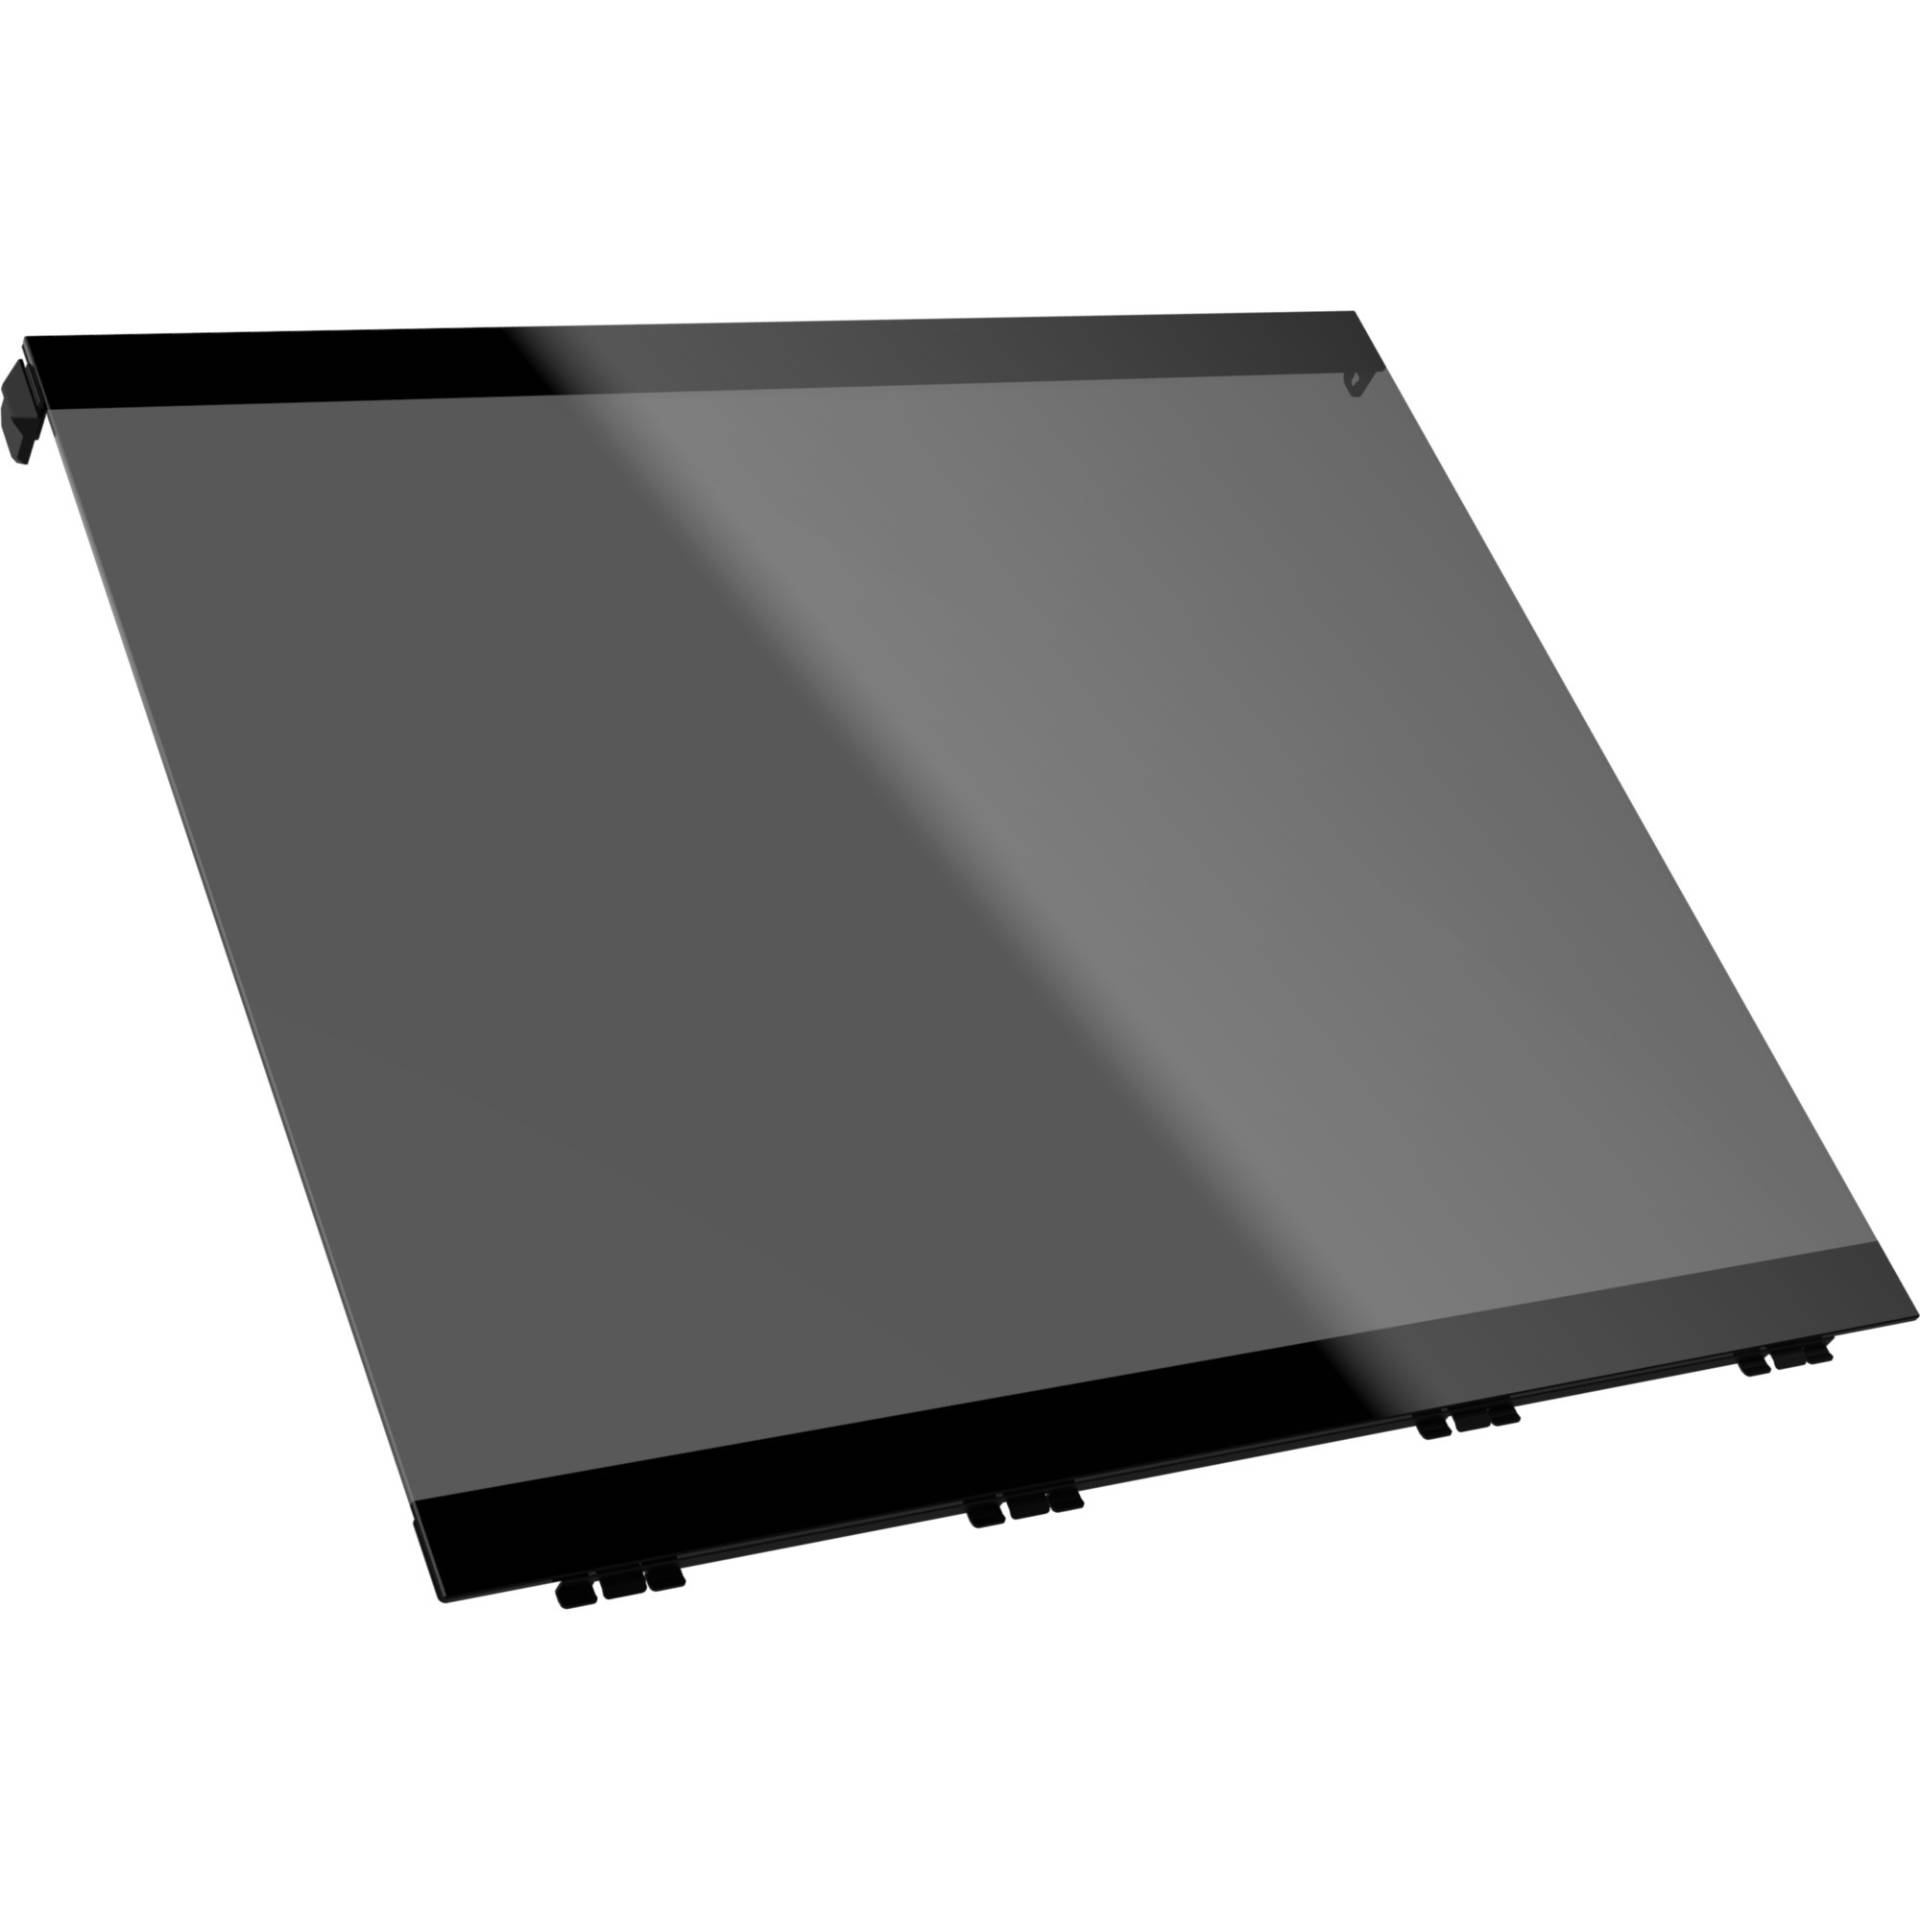 Tempered Glass Side Panel – Dark Tinted TG (Define 7), Seitenteil von Fractal Design